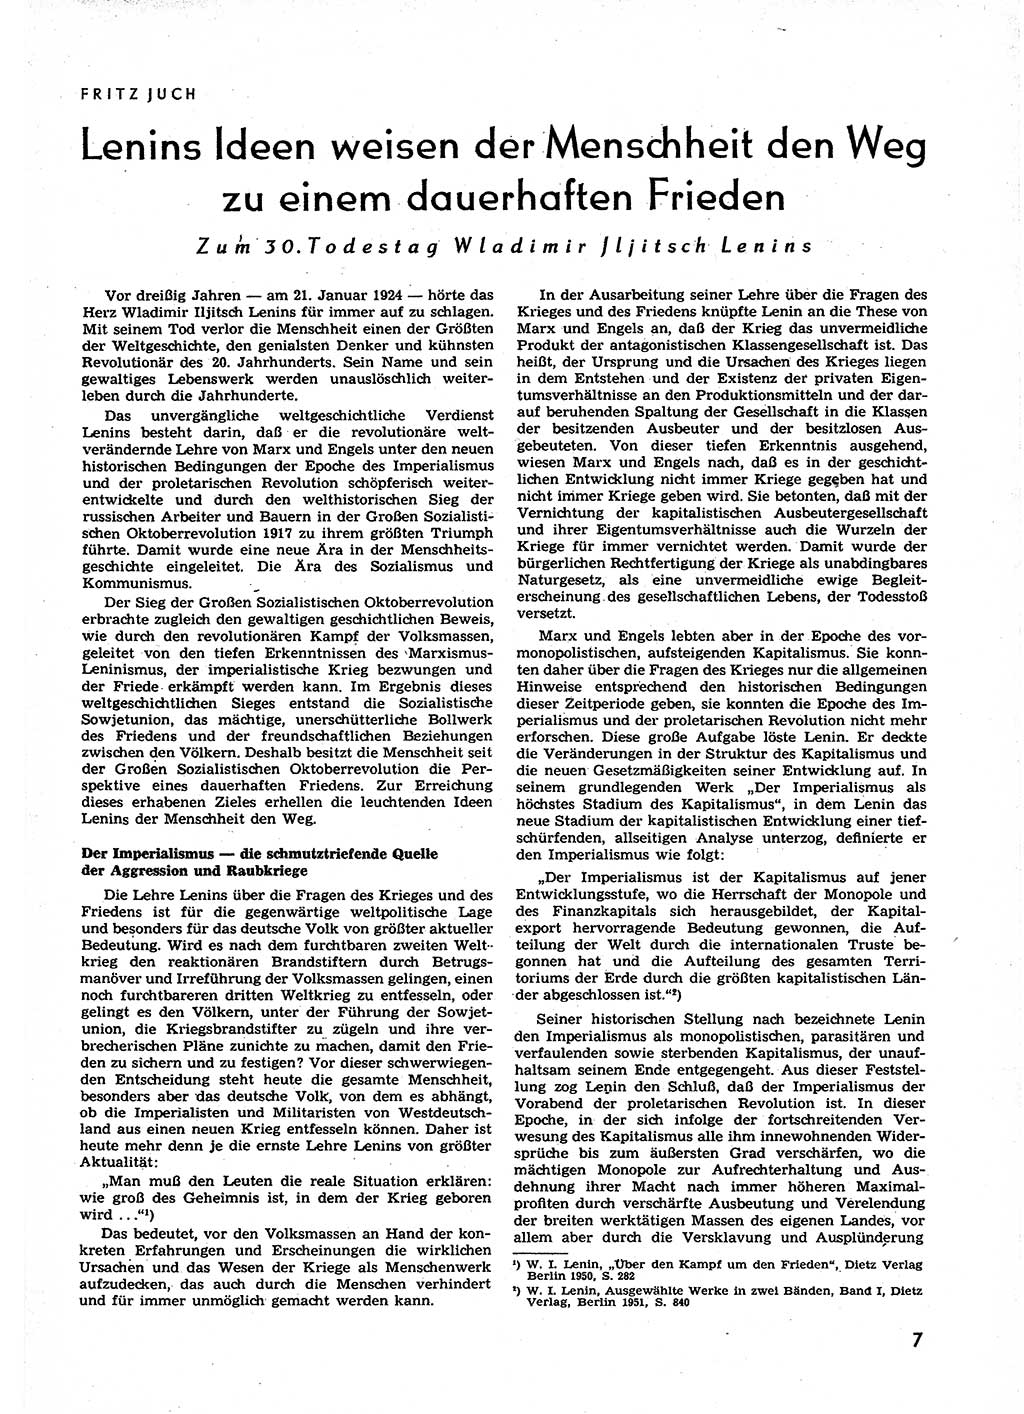 Neuer Weg (NW), Organ des Zentralkomitees (ZK) der SED (Sozialistische Einheitspartei Deutschlands) für alle Parteiarbeiter, 9. Jahrgang [Deutsche Demokratische Republik (DDR)] 1954, Heft 1/7 (NW ZK SED DDR 1954, H. 1/7)